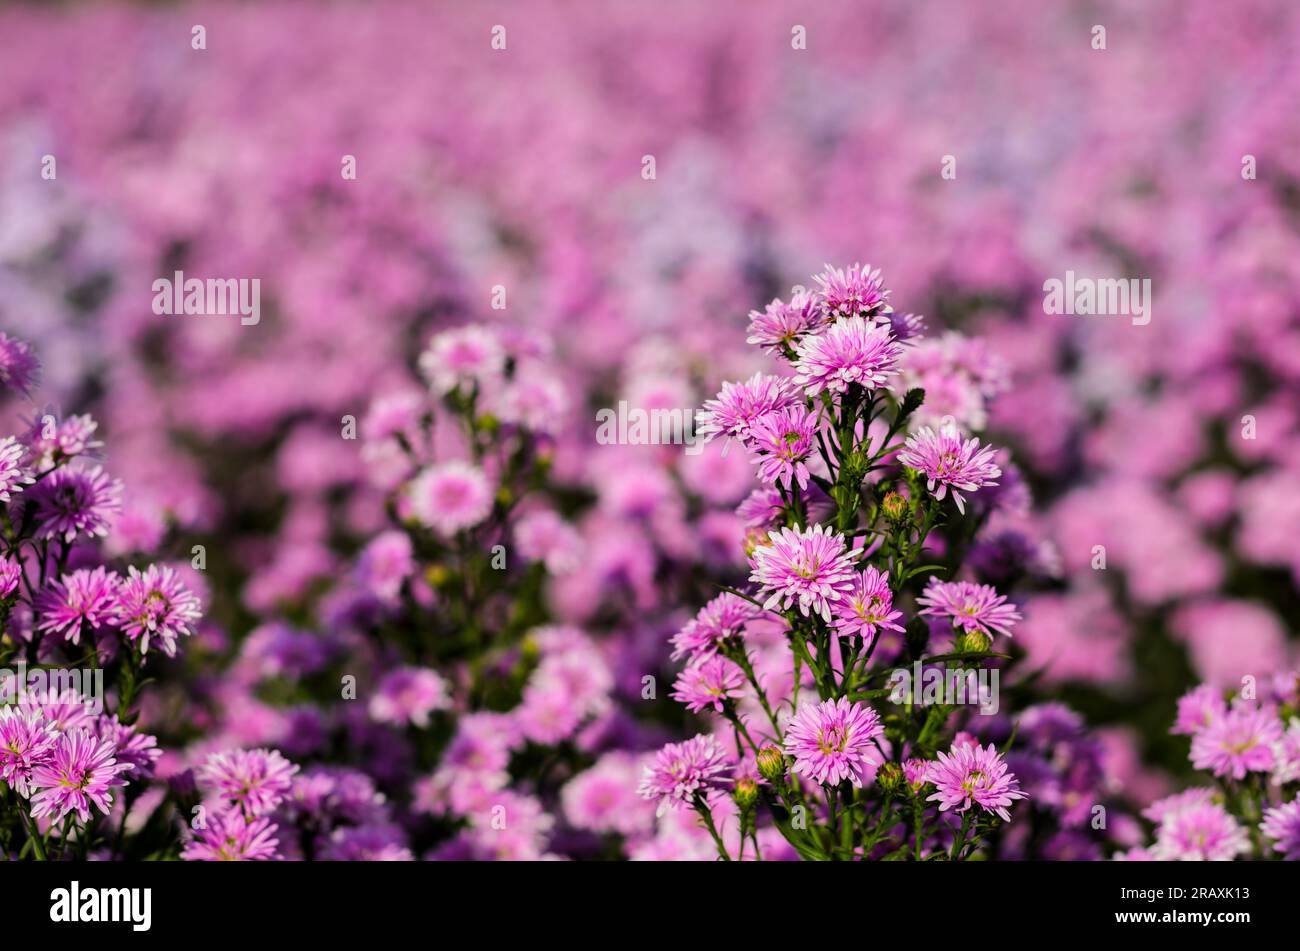 Selezione selettiva dei fiori di aster rosa della taglierina di New York che fioriscono in fattoria con il suo sfondo di fiori sfocati. Foto Stock